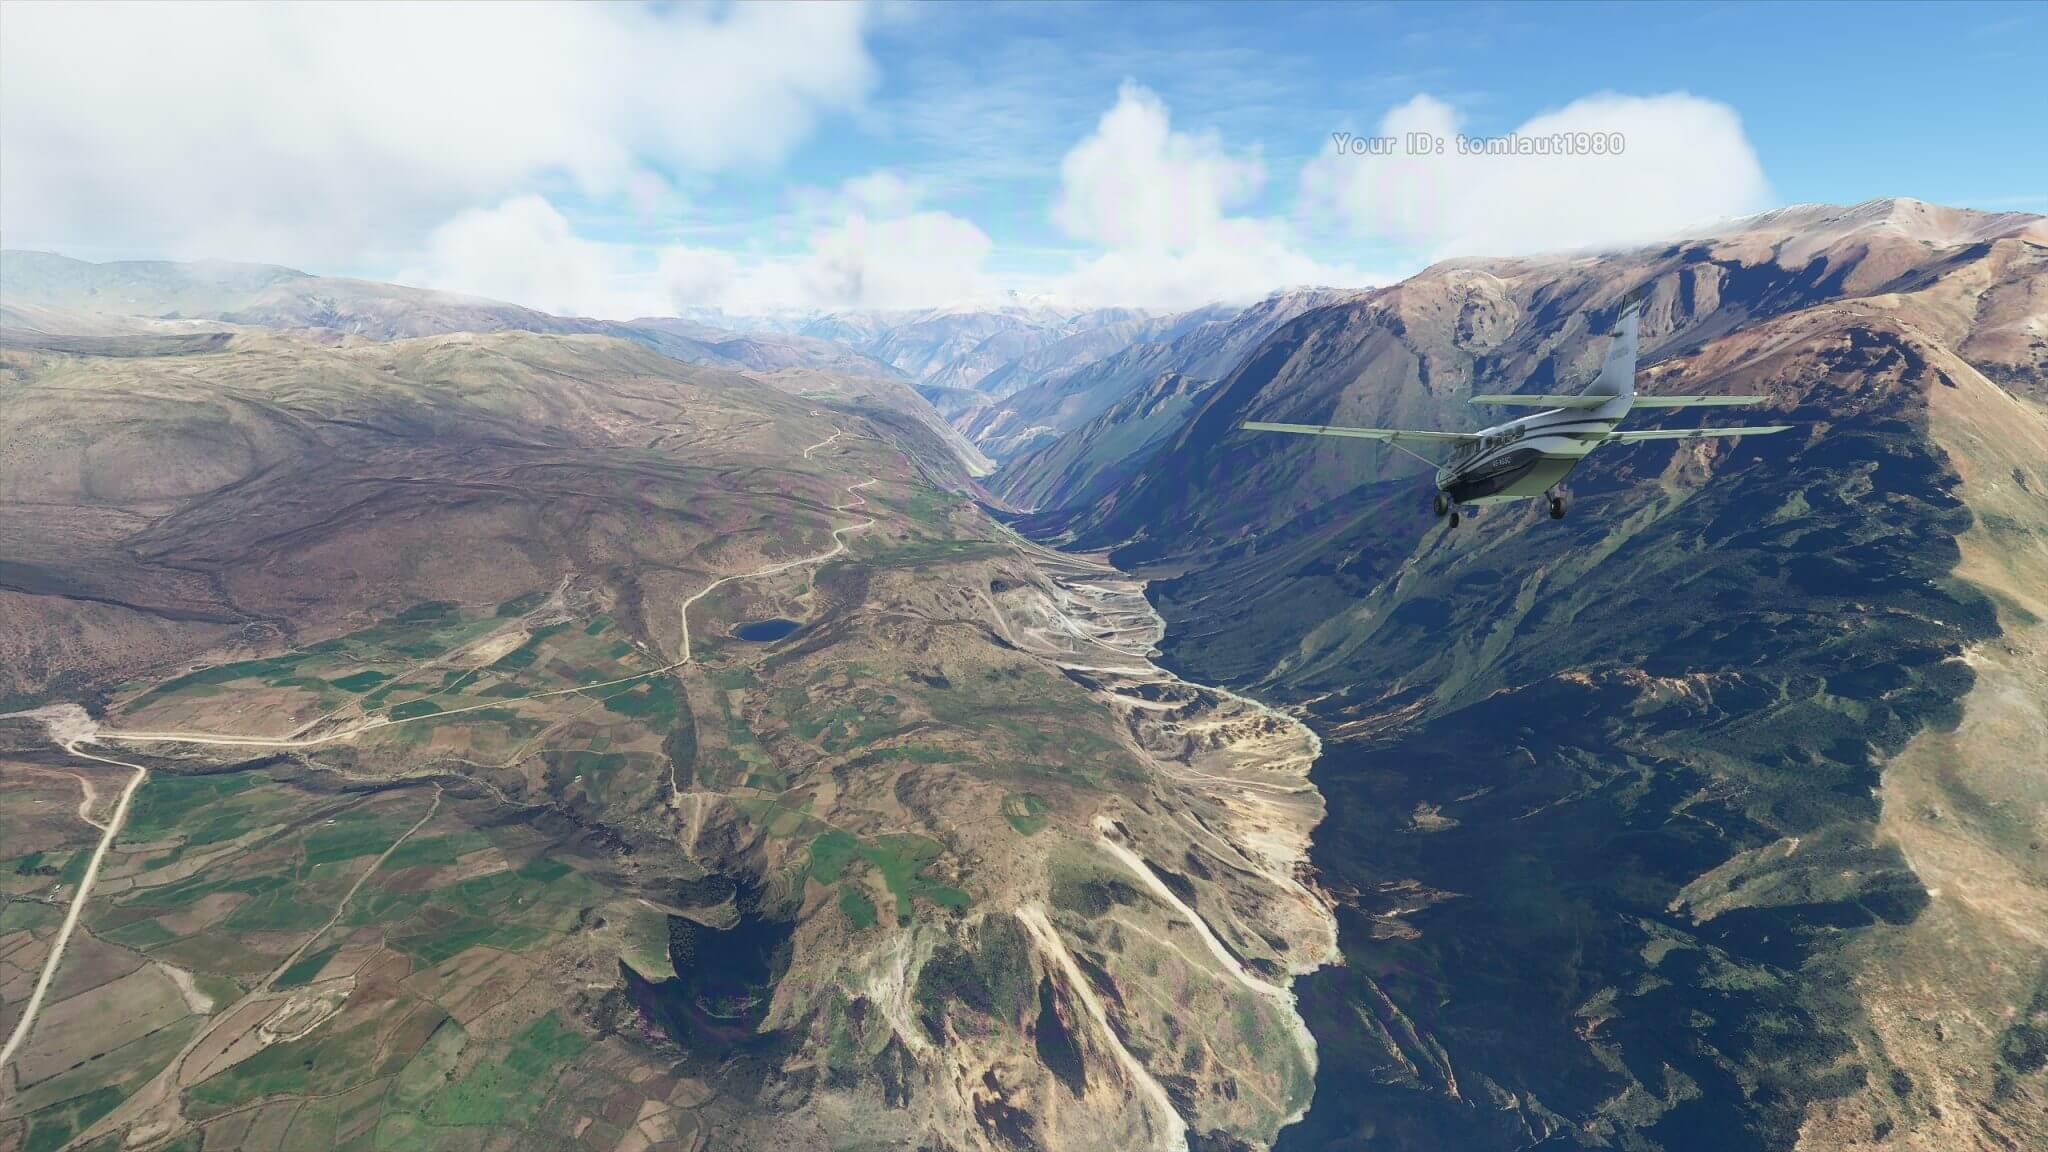 《微軟飛行模擬》全新截圖公布 自然美景讓人震撼